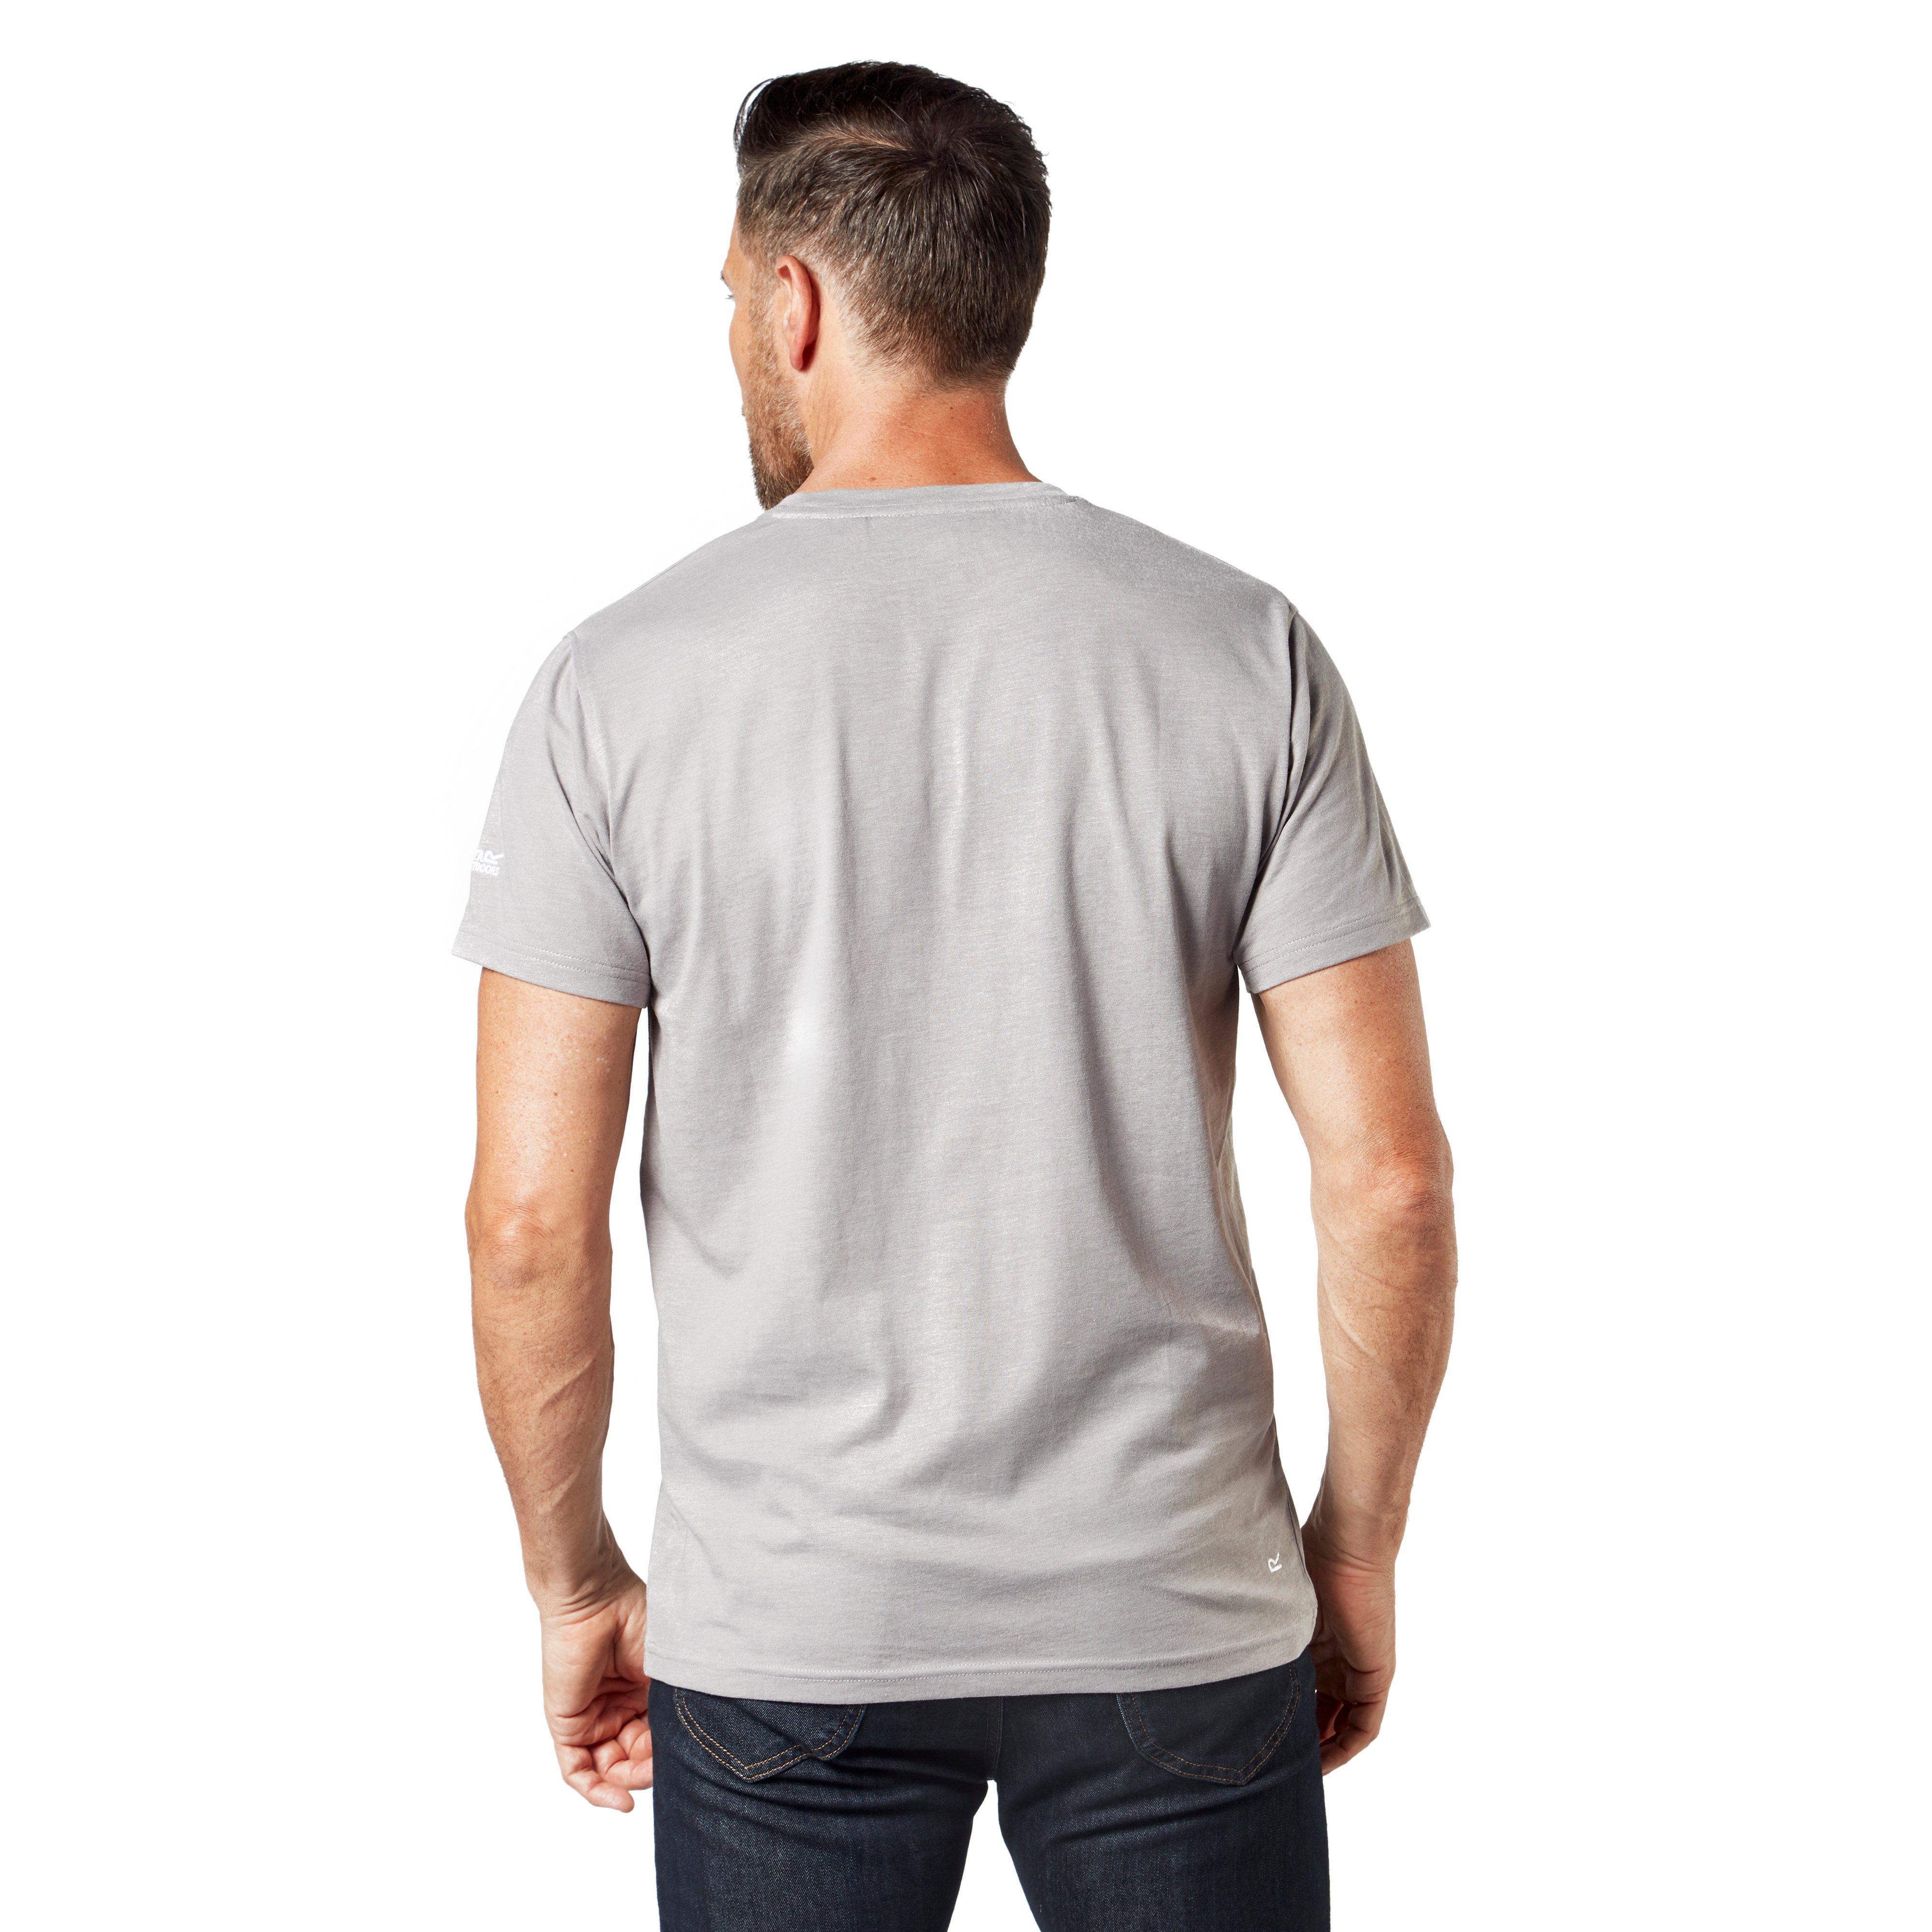 Regatta Men's Rolstone T-Shirt Review